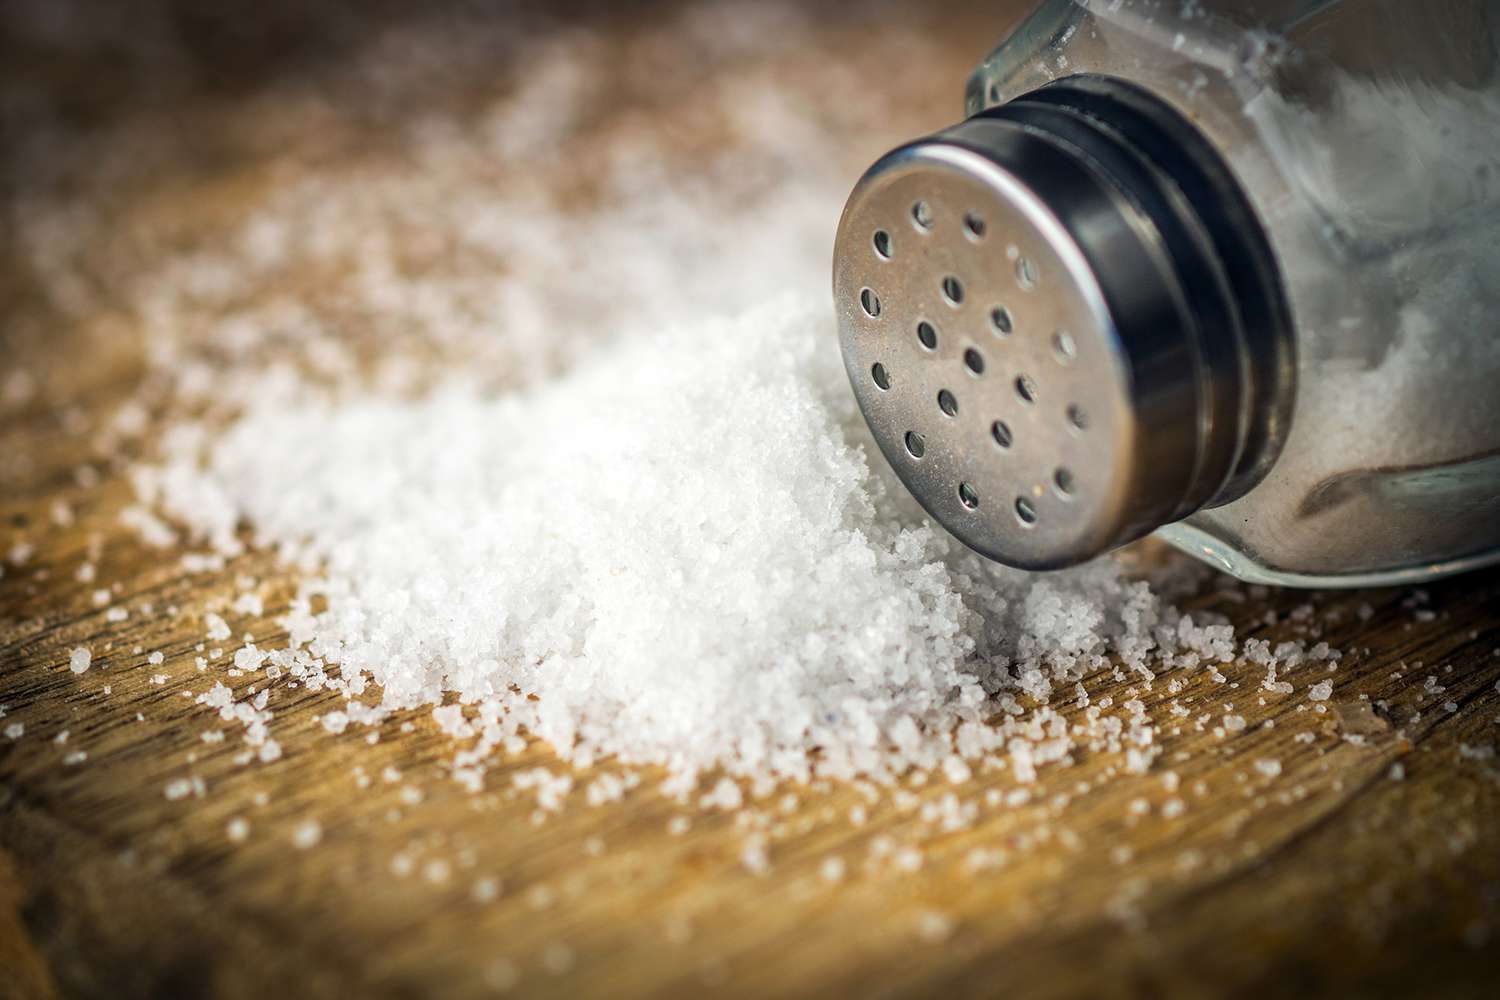 salt shaker with spilled pile of salt on wooden background